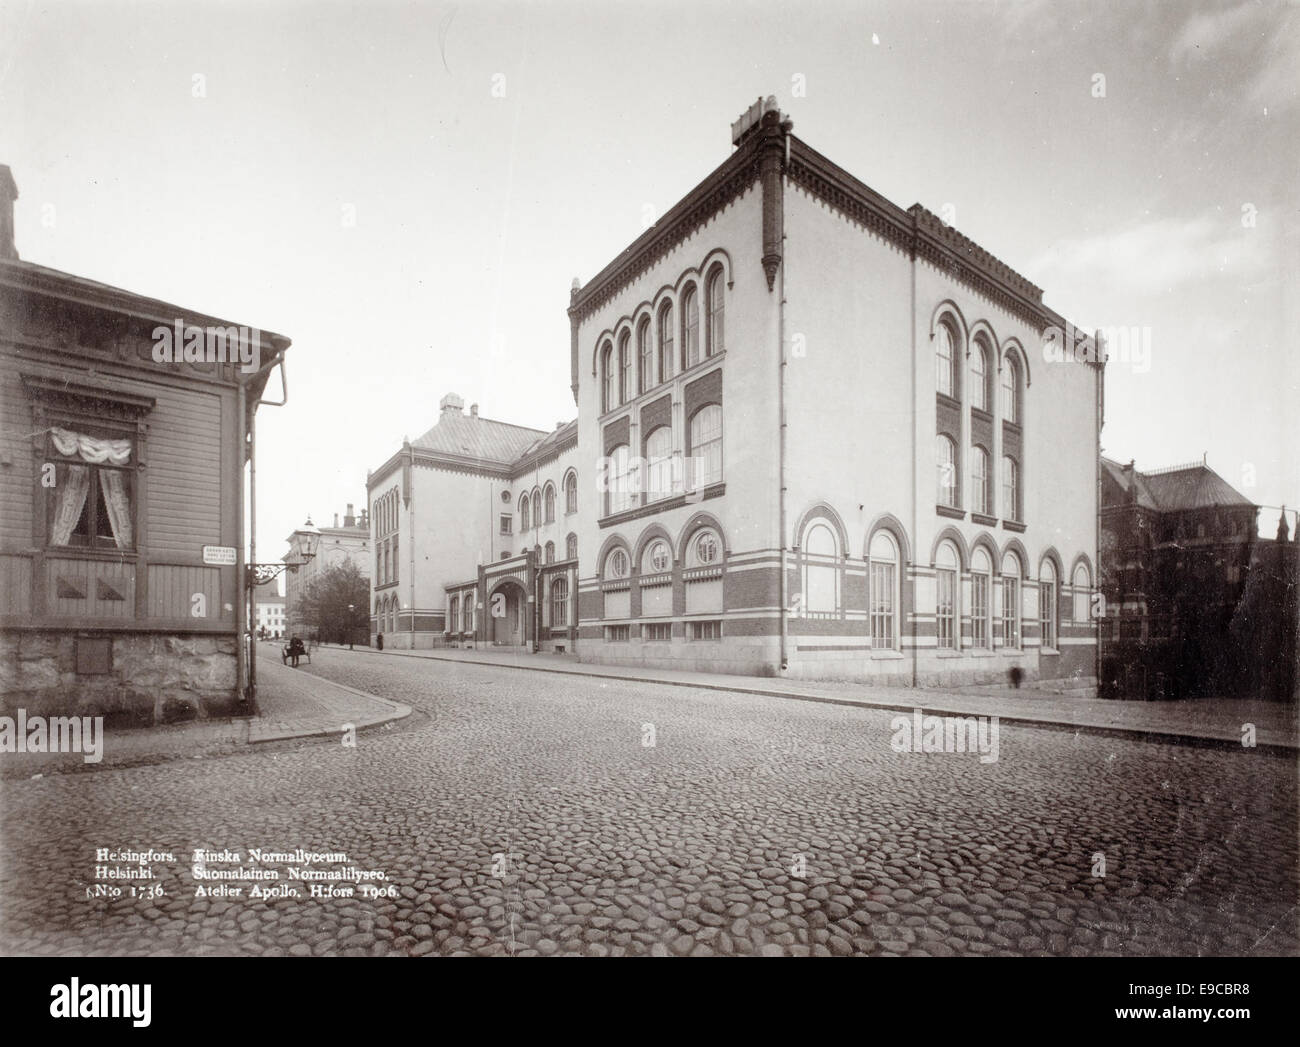 Suomalainen Normaalilyseo (gymnasium), Helsinki, 1906 Stock Photo